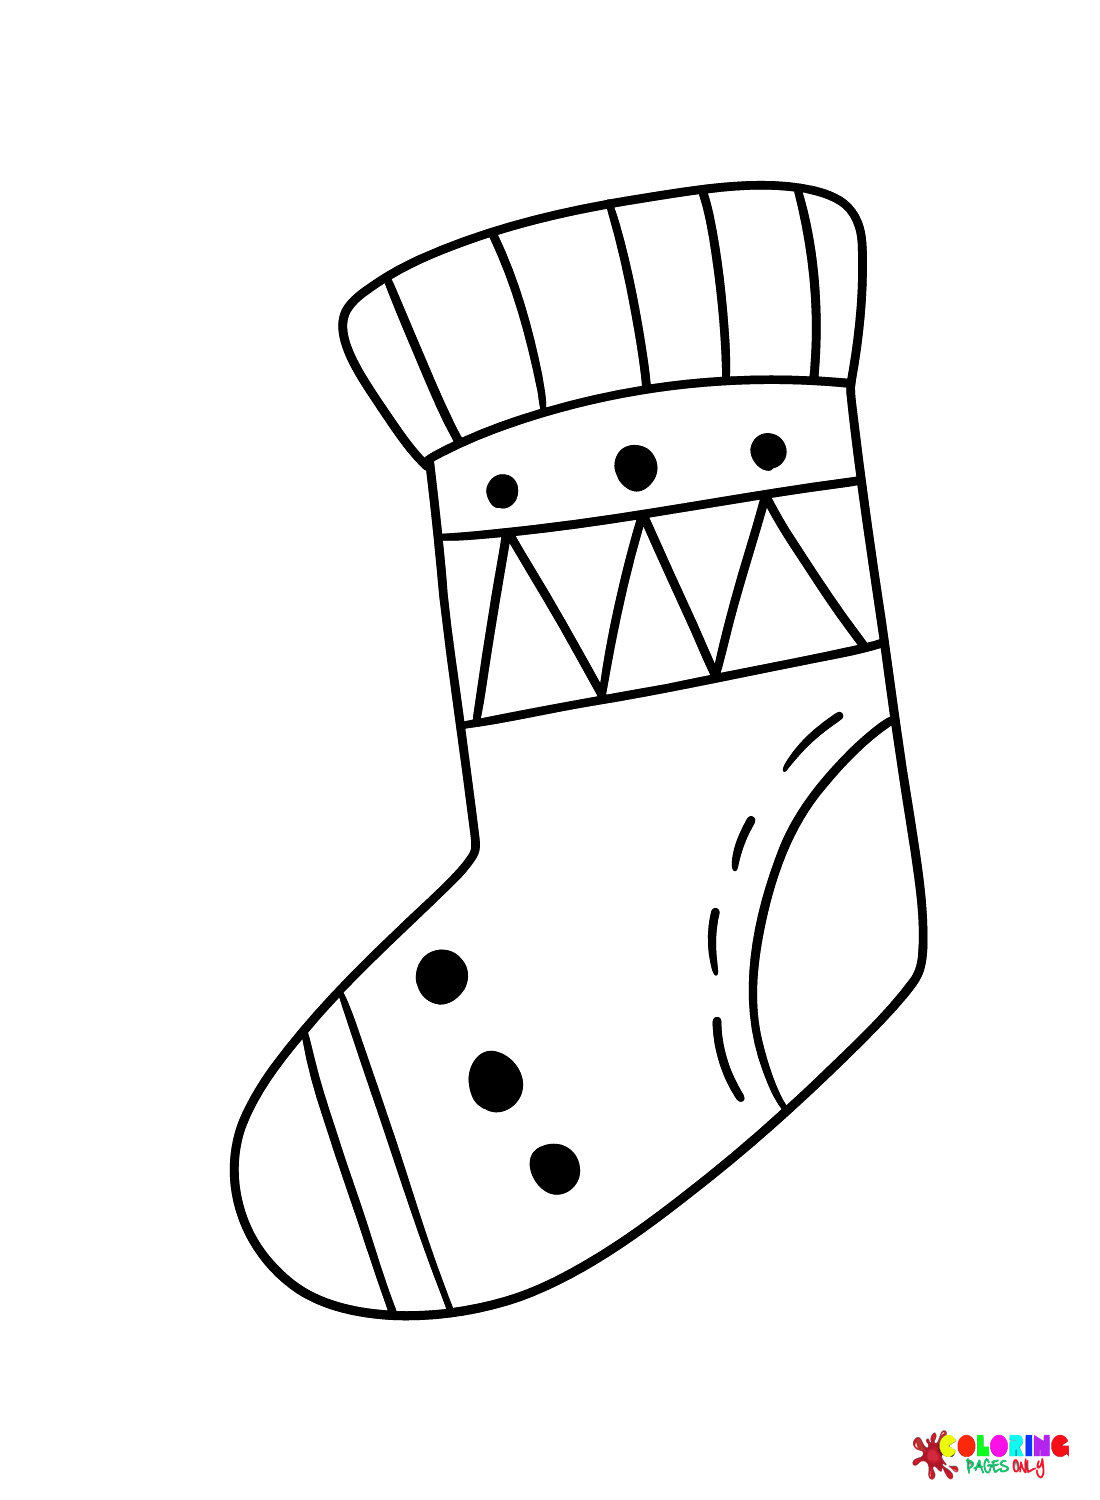 Print Sock from Socks